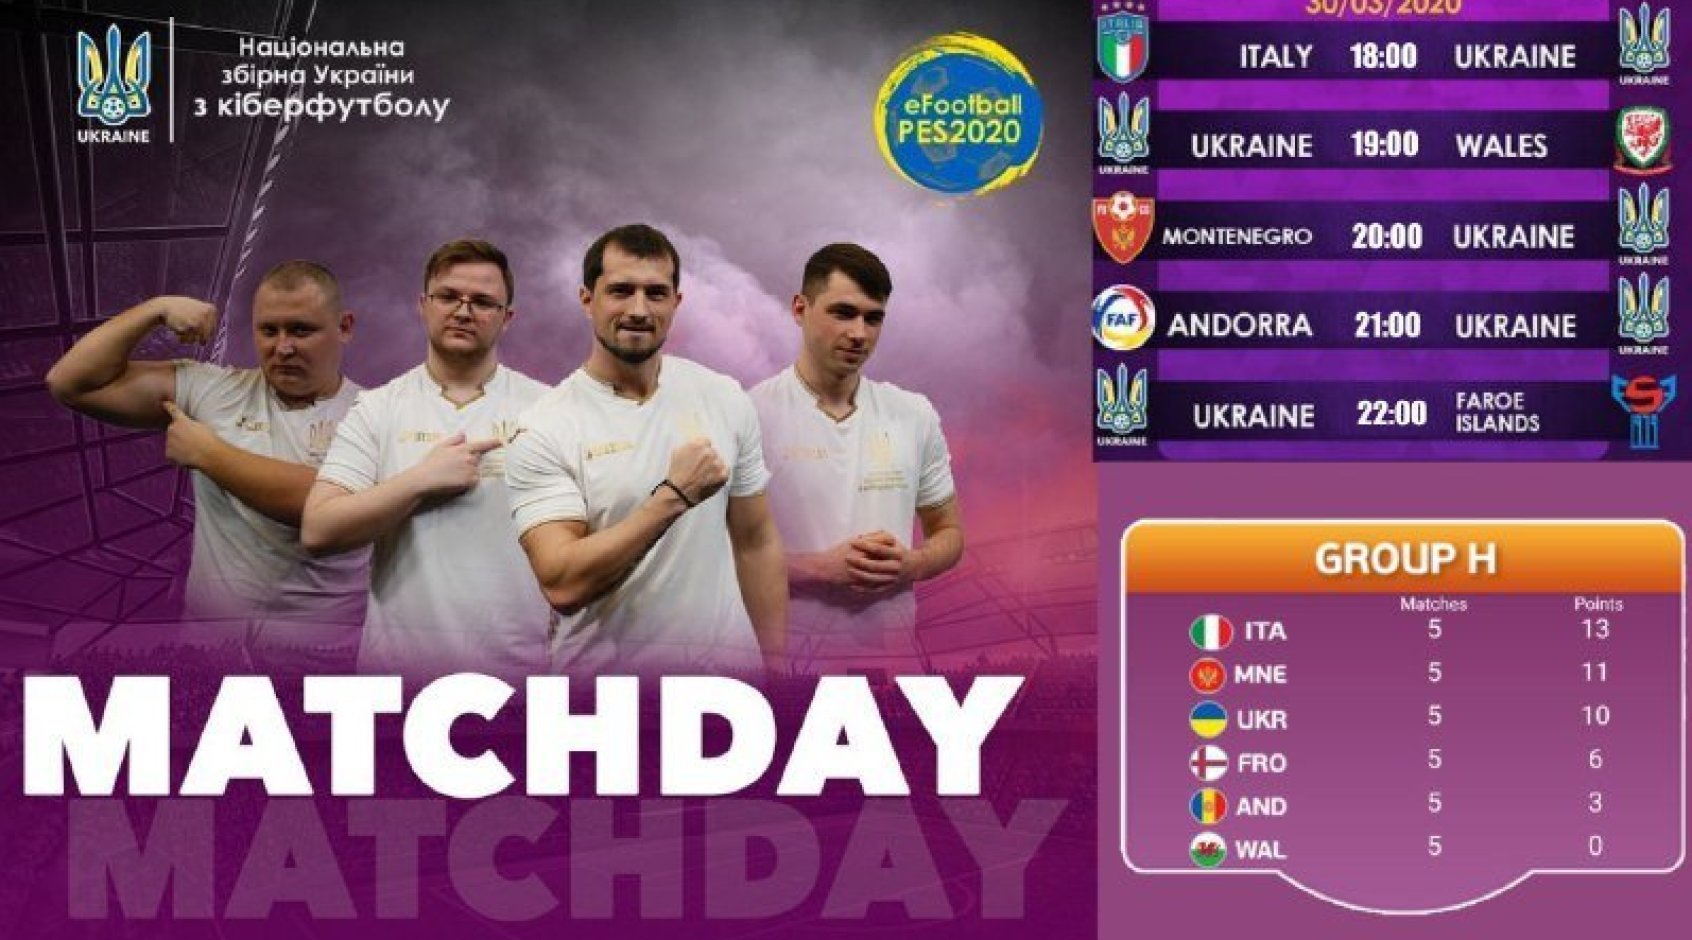 Киберфутбол. е-Евро-2020. Квалификация группы F-J. Украина - Фарерские острова: прогноз на матч